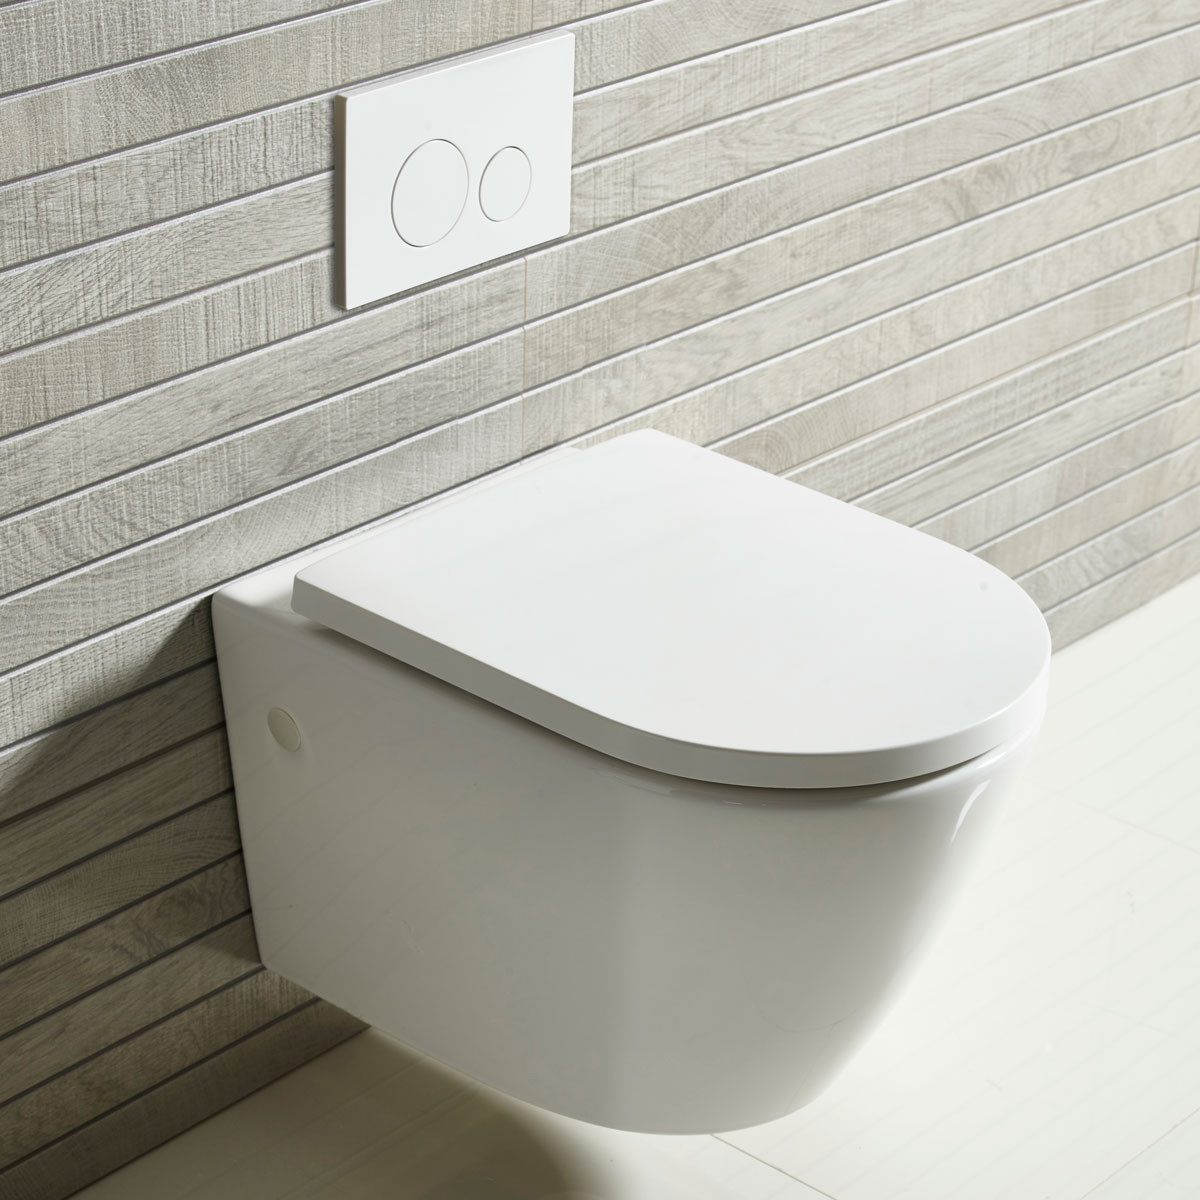 En enkel analyse av egenskapene til vegghengte toaletter